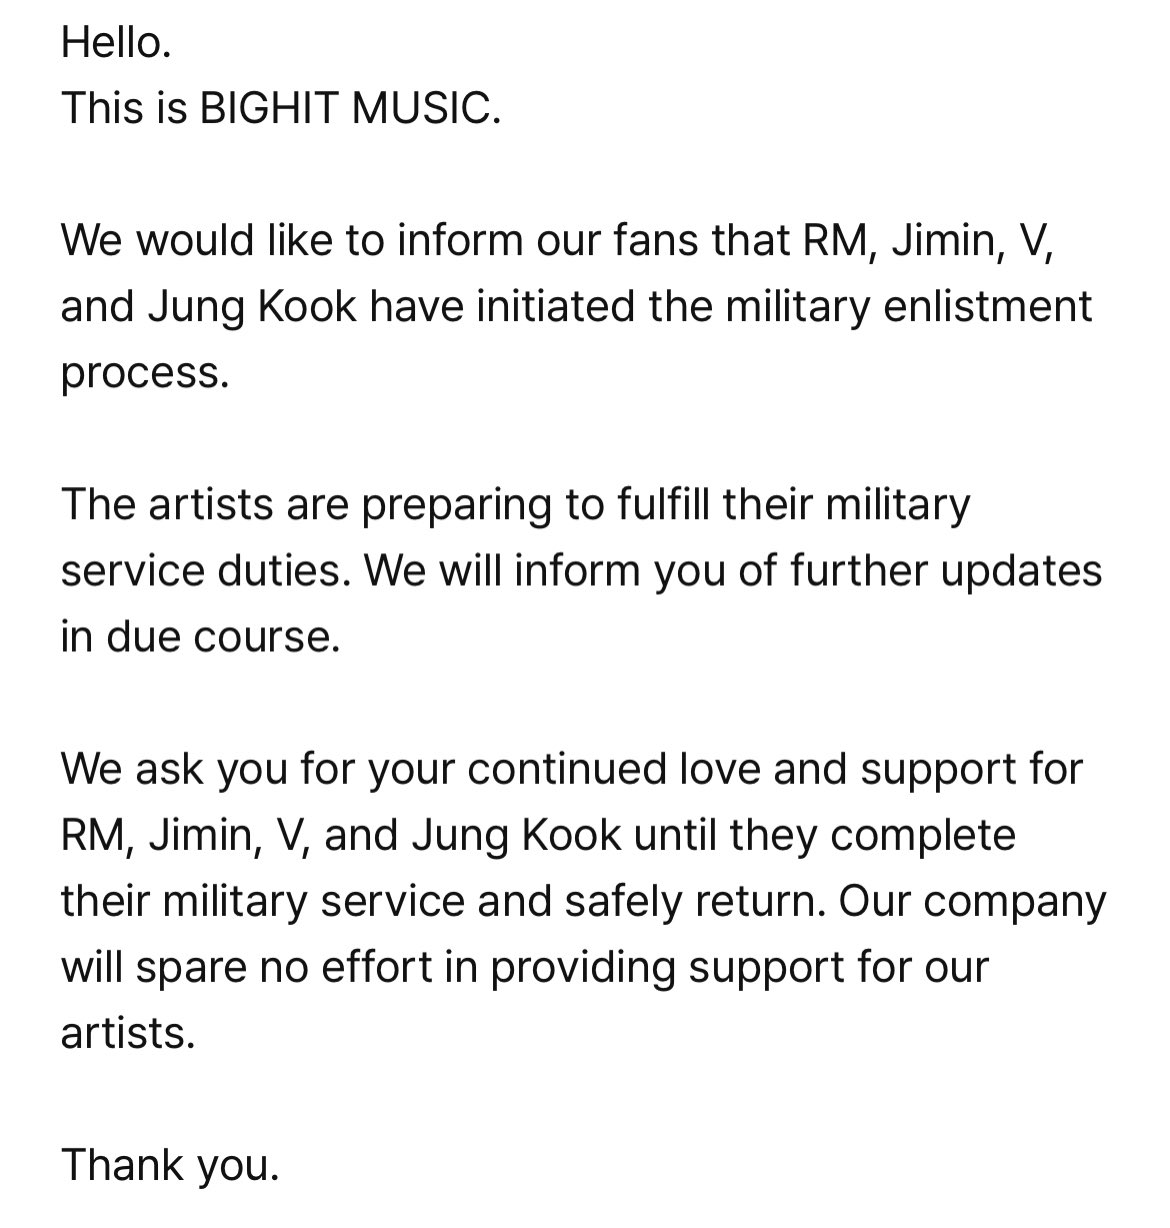 BTS confirma que RM, Jimin, V y Jungkook se preparan para entrar al servicio militar